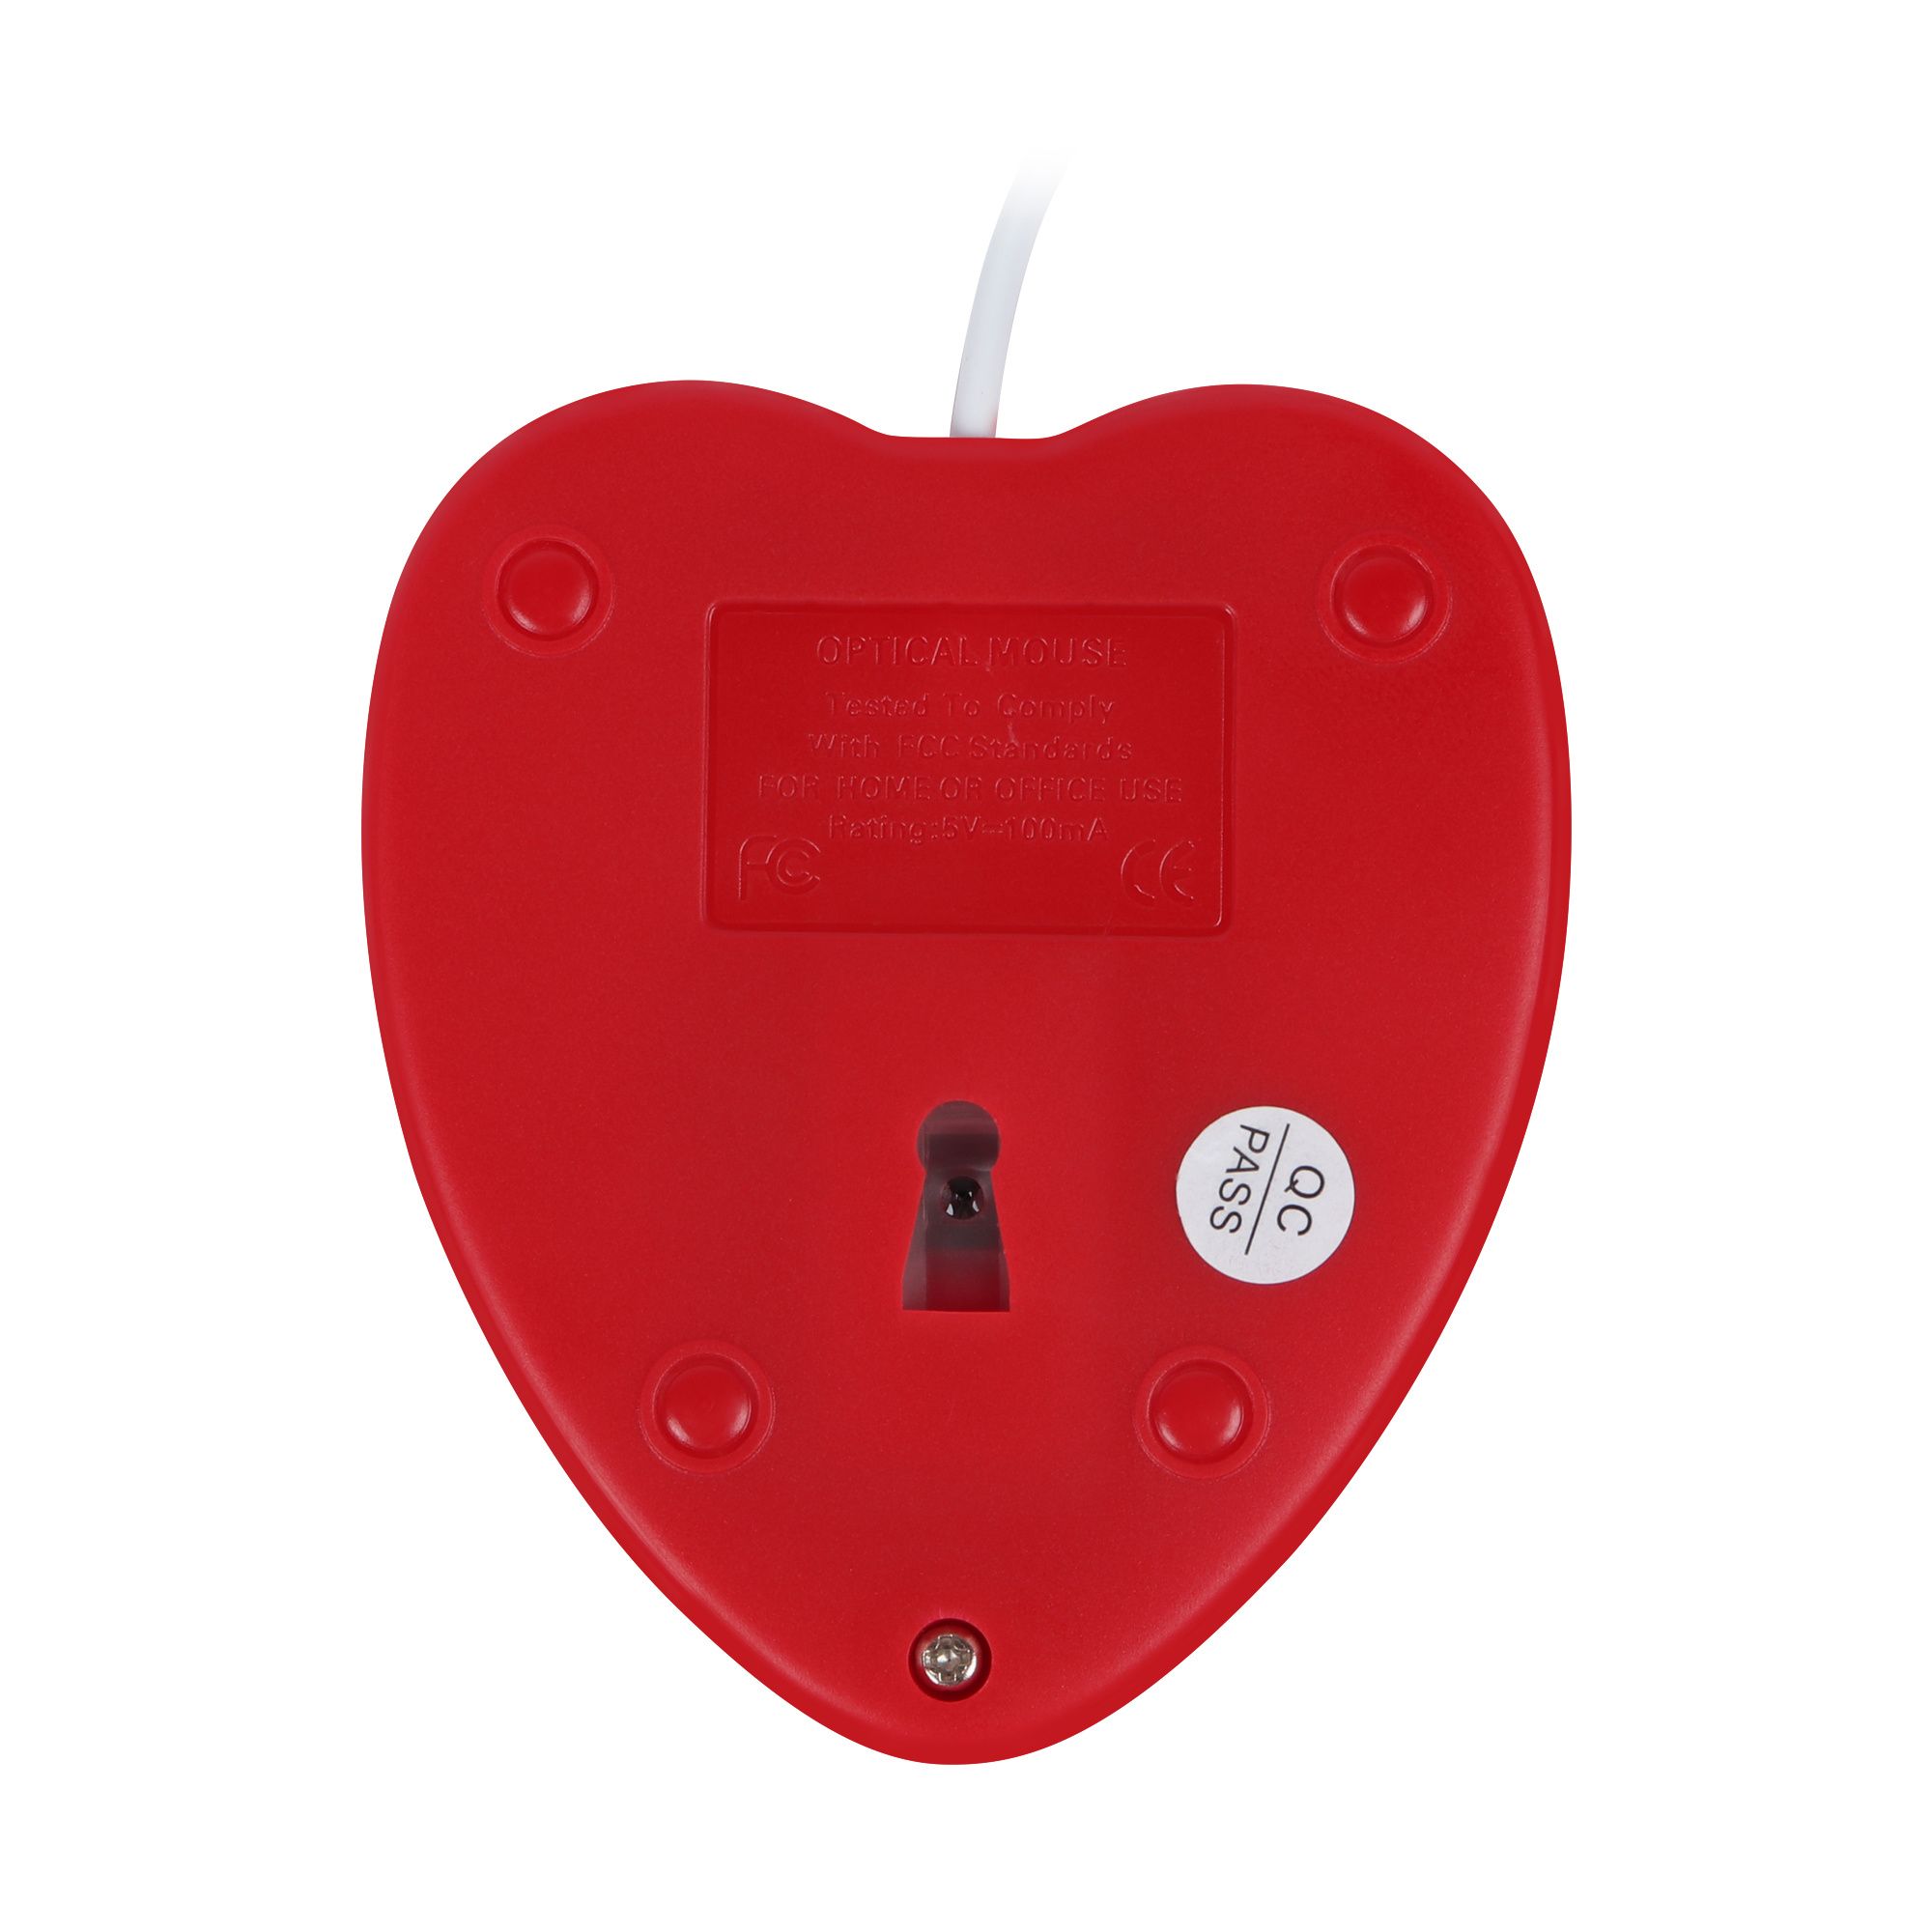 Ratón con fíos para ordenador-USB-Óptico-Creativo-Gaming-Cute-Mause-Ergonomic-Love-Heart-Ratones-3D-para-laptop (5)